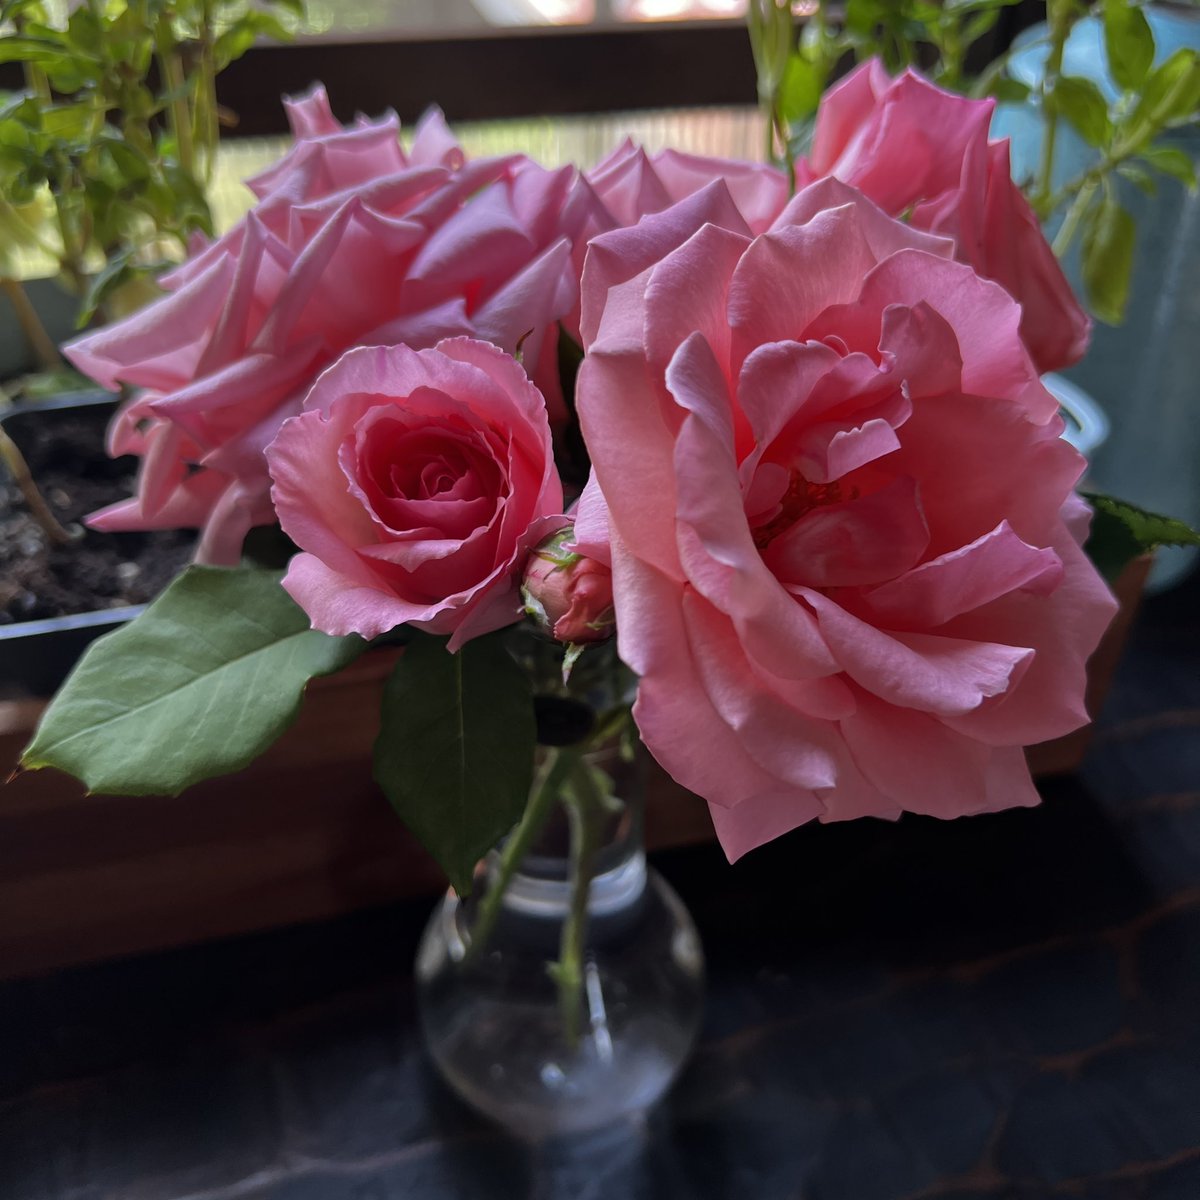 今日の我が家の愛子さま🌹
蕾がどんどん咲いて綺麗です
切り花の方も元気😀
#プリンセスアイコ
#バラ